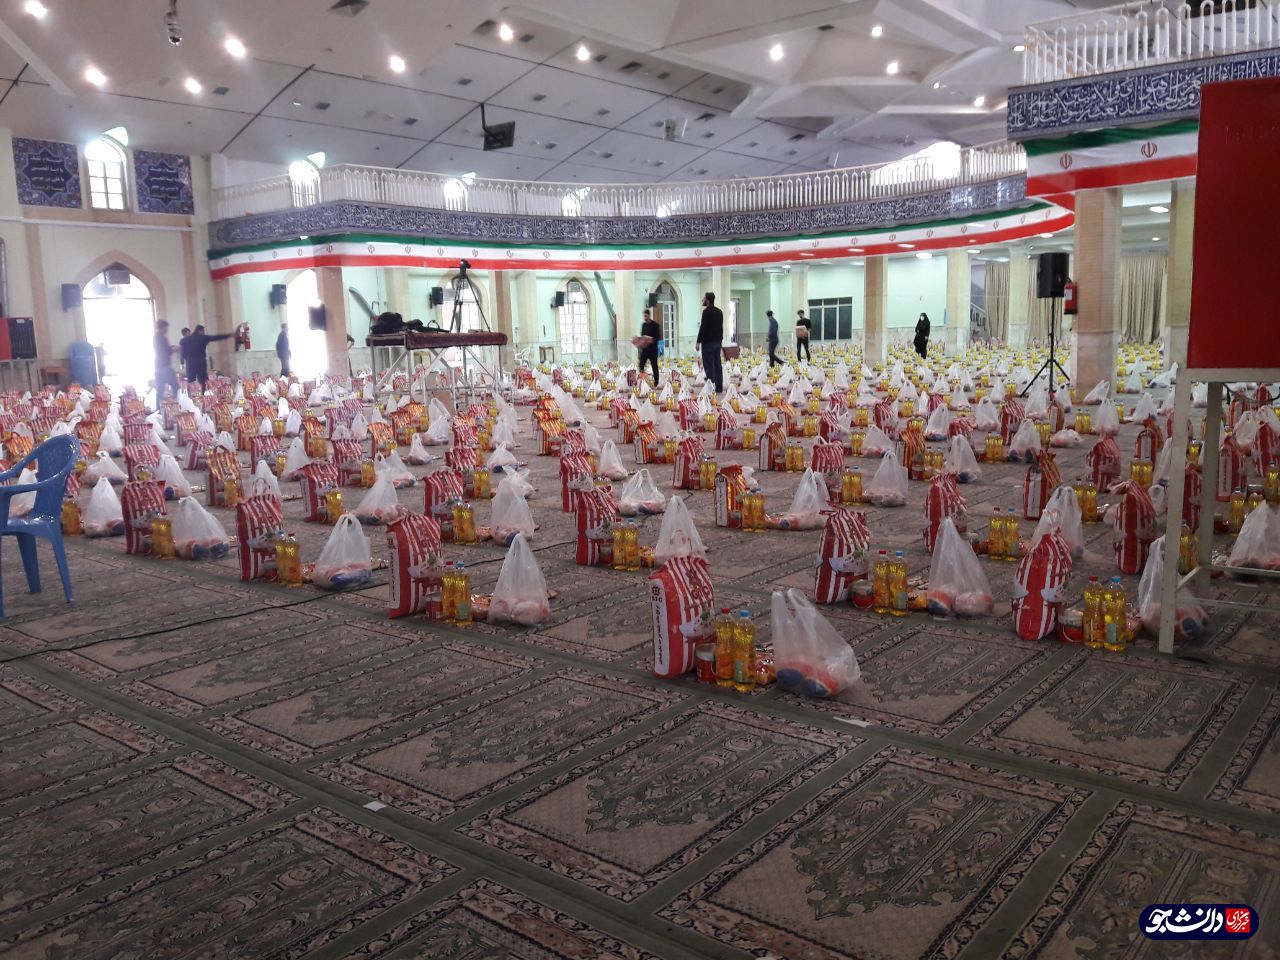 1000 بسته غذایی در بین نیازمندان همدانی به همت بسیج دانشجویی توزیع شد